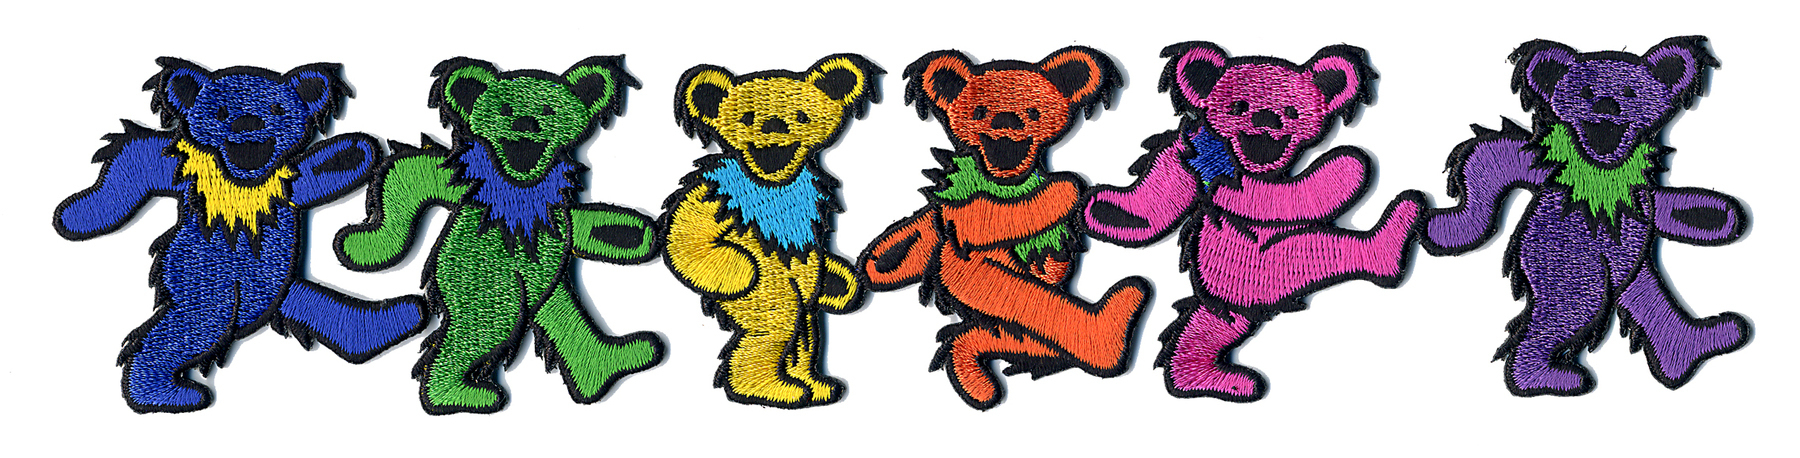 The Grateful Dead dancing bears